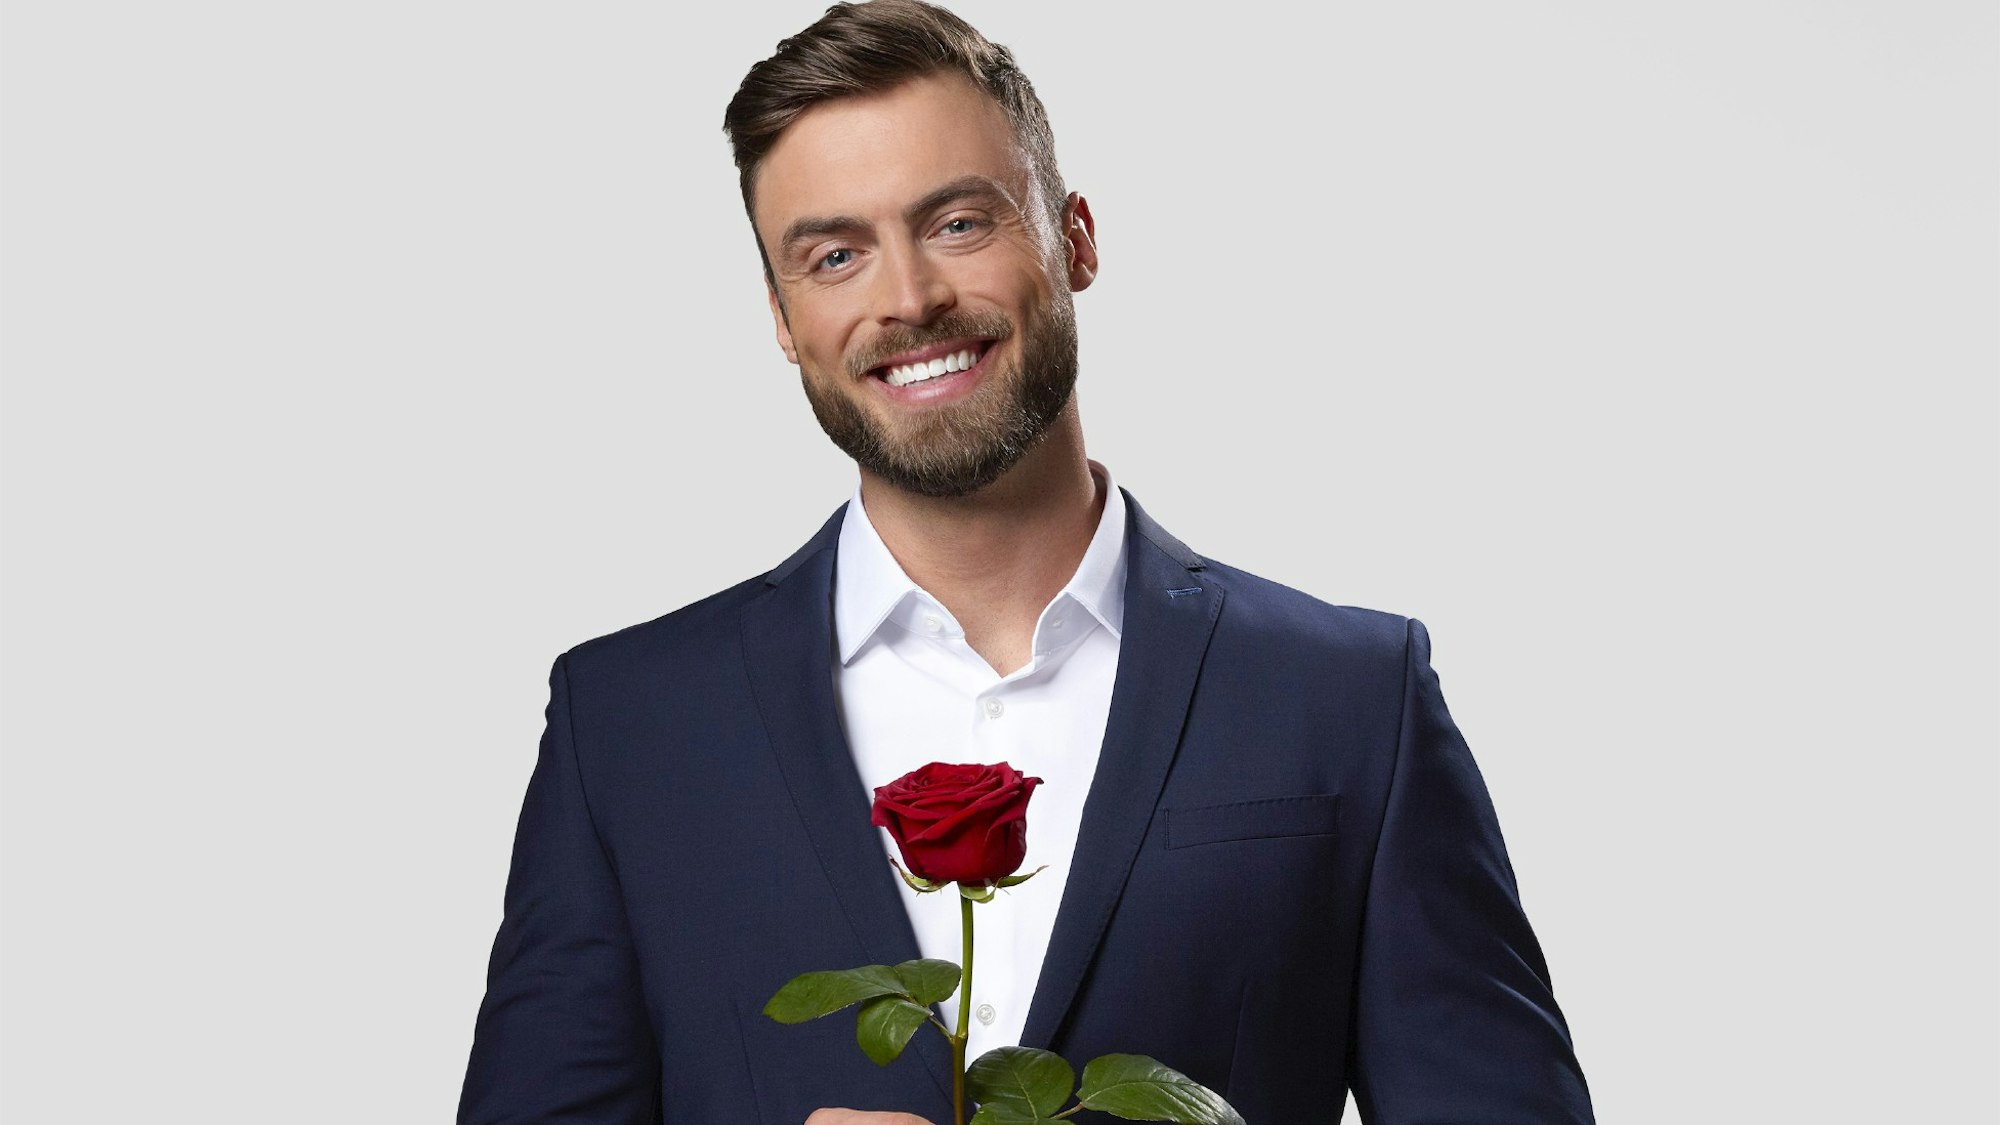 Niko Griesert steht im blauen Anzug und mit einer roten Rose in der Hand vor einer weißen Fotowand.